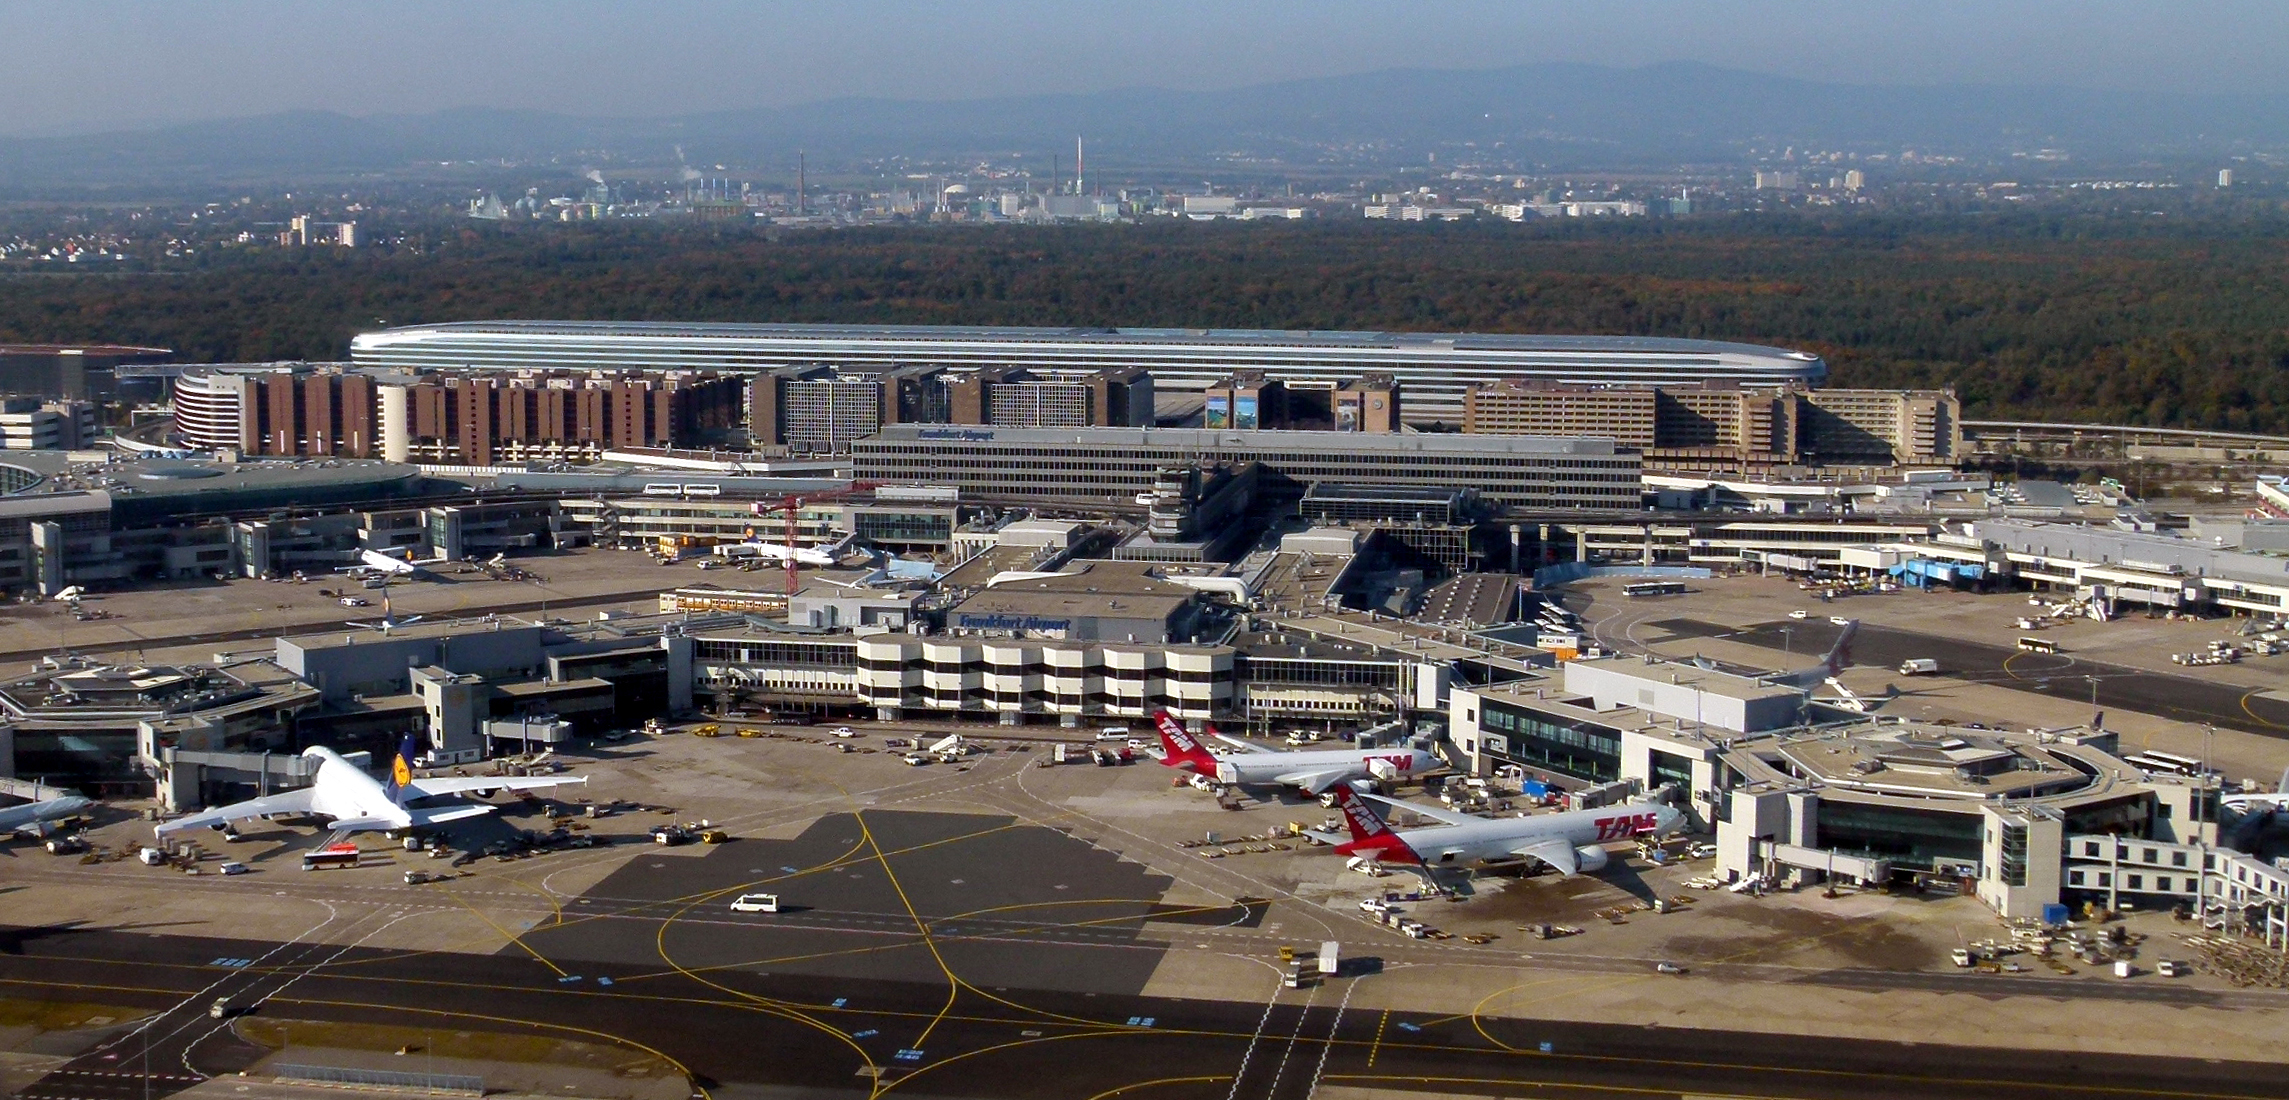 "Mega aeroportul": Discovery arată culisele aeroportului din Frankfurt, între cele mai mari din lume